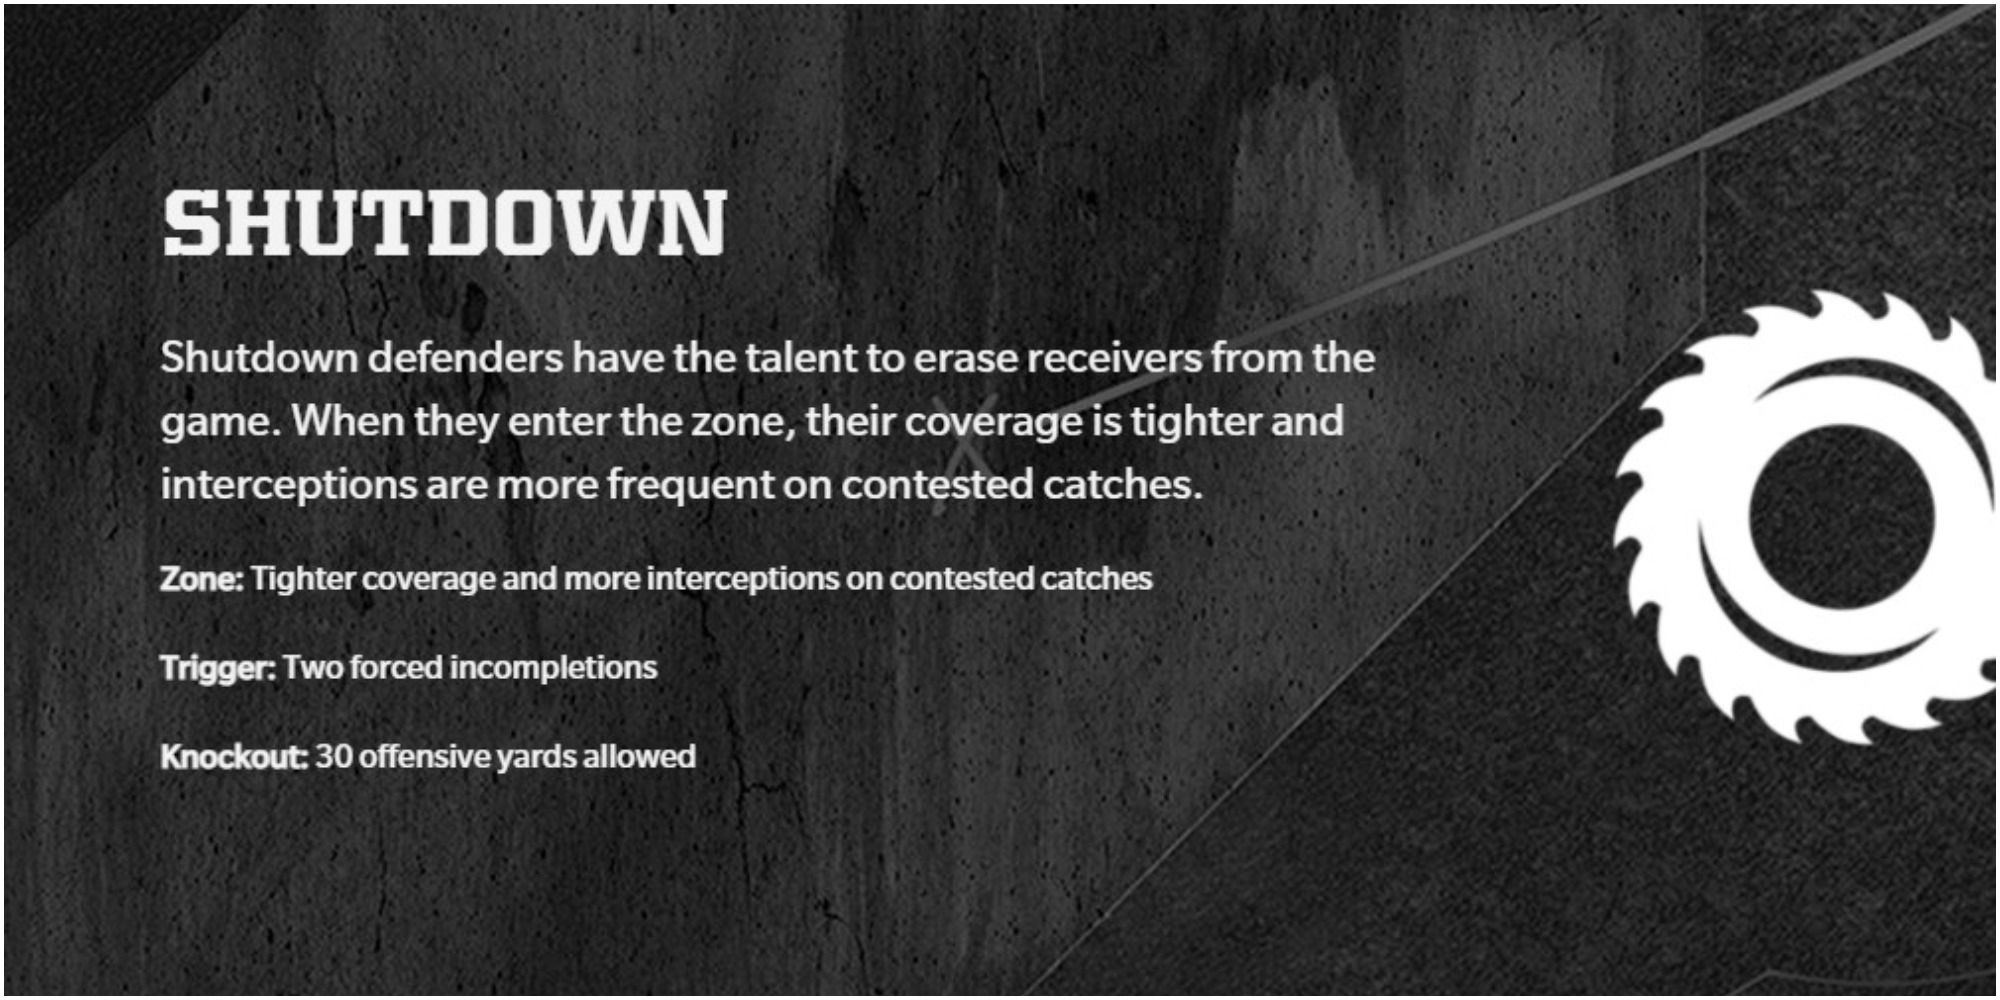 Madden NFL 22 Shutdown Description On The Website